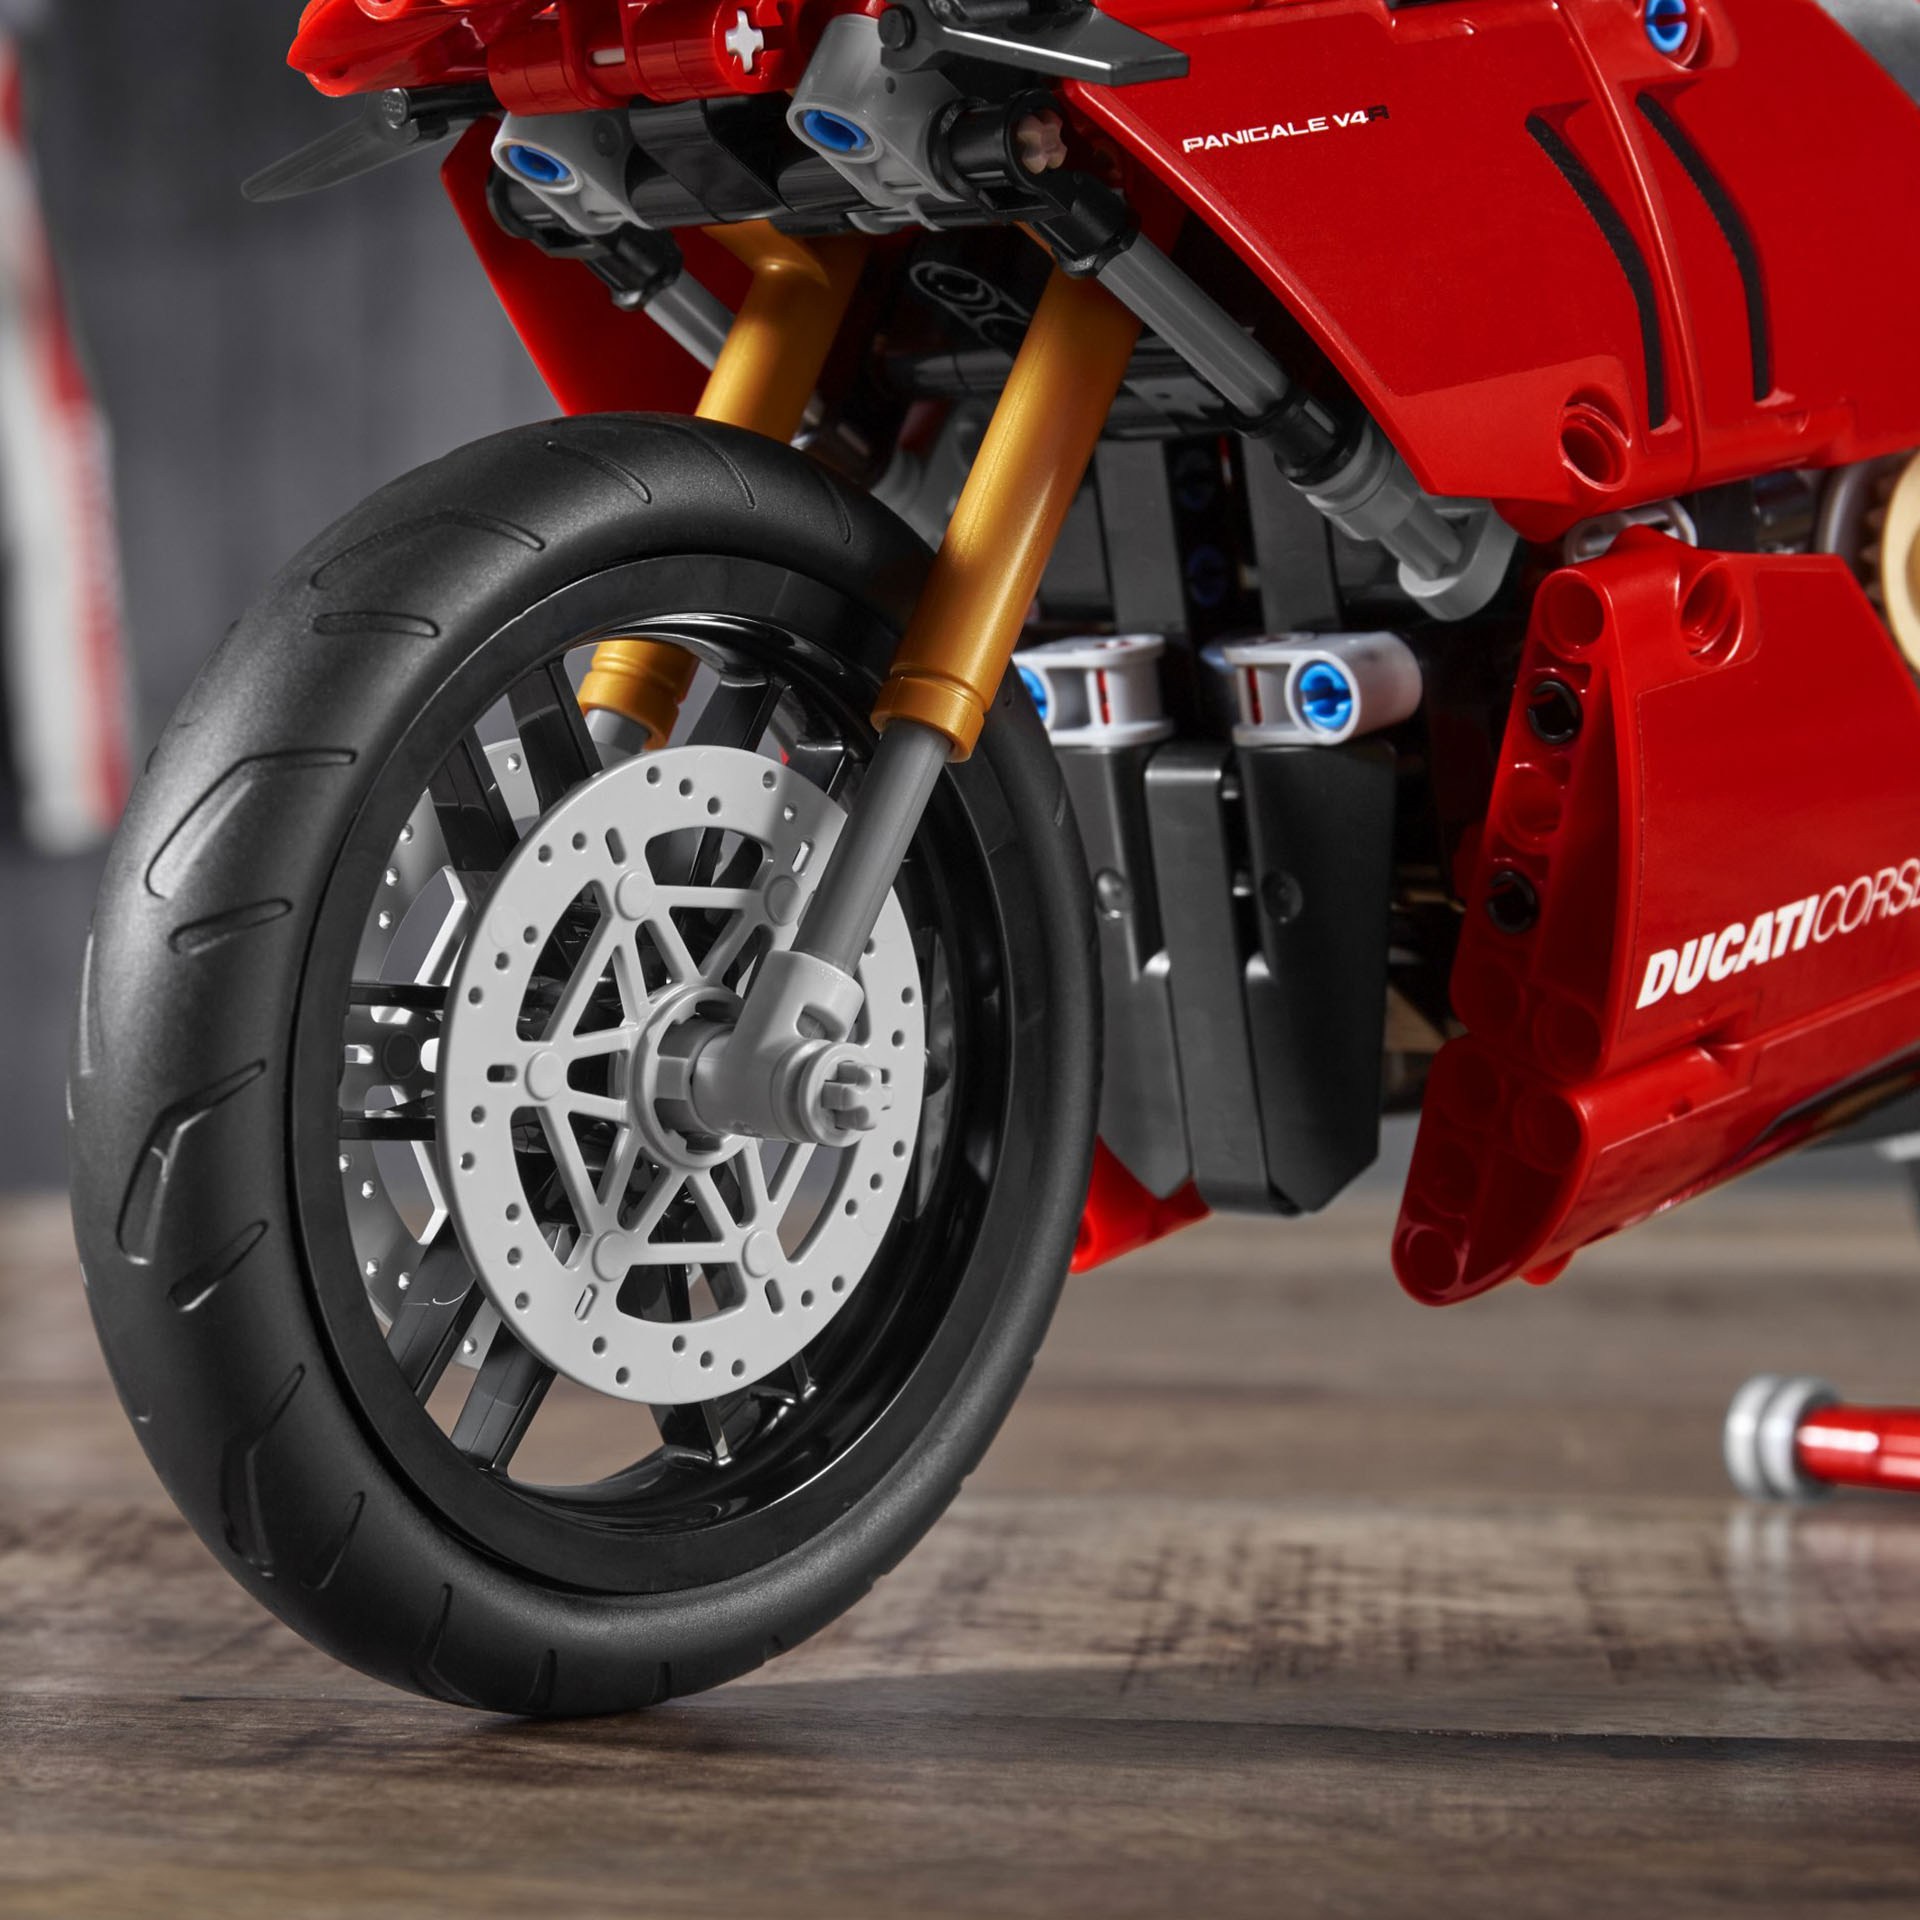 LEGO Technic Ducati Panigale V4 R, Modellino Moto Superbike da Esposizione, Rega 42107, , large